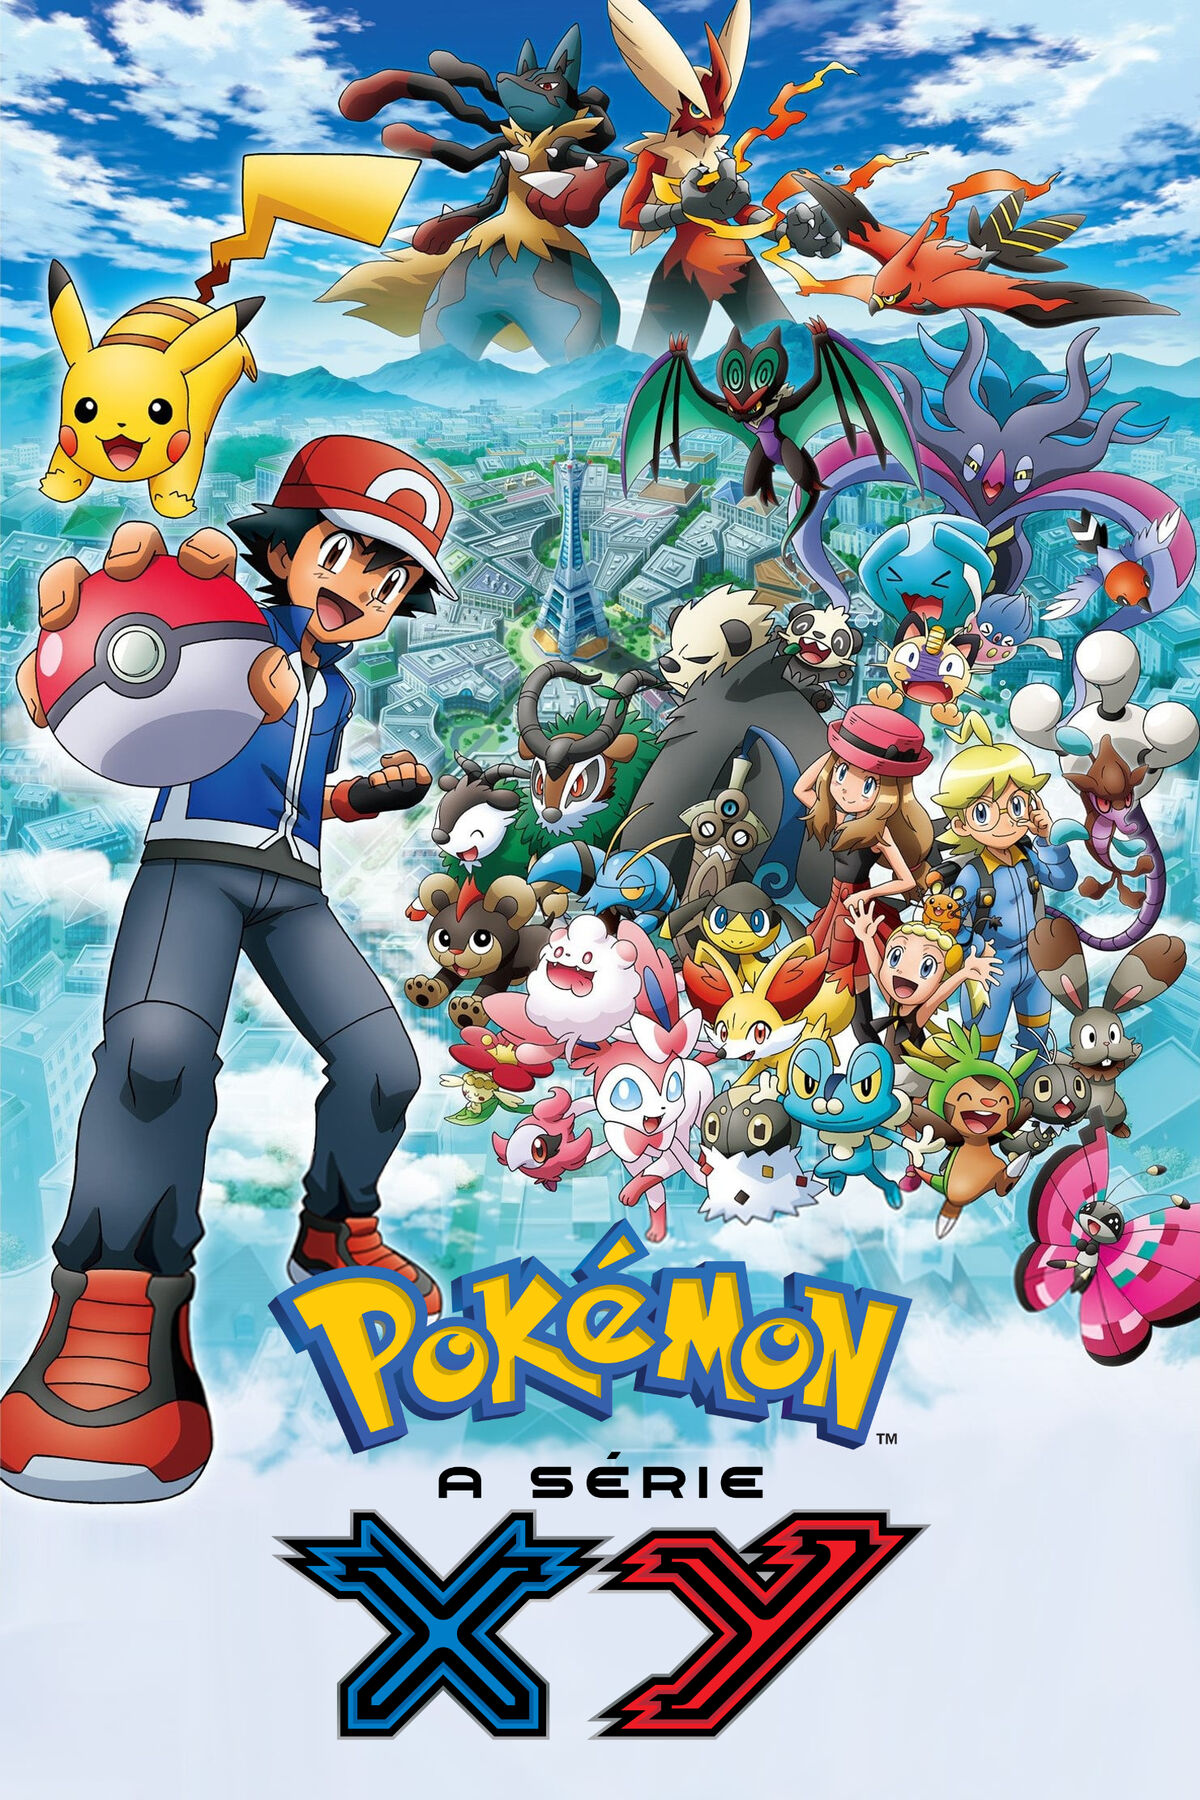 18ª Temporada: XY - Desafio em Kalos - Pokémon (Dublado)